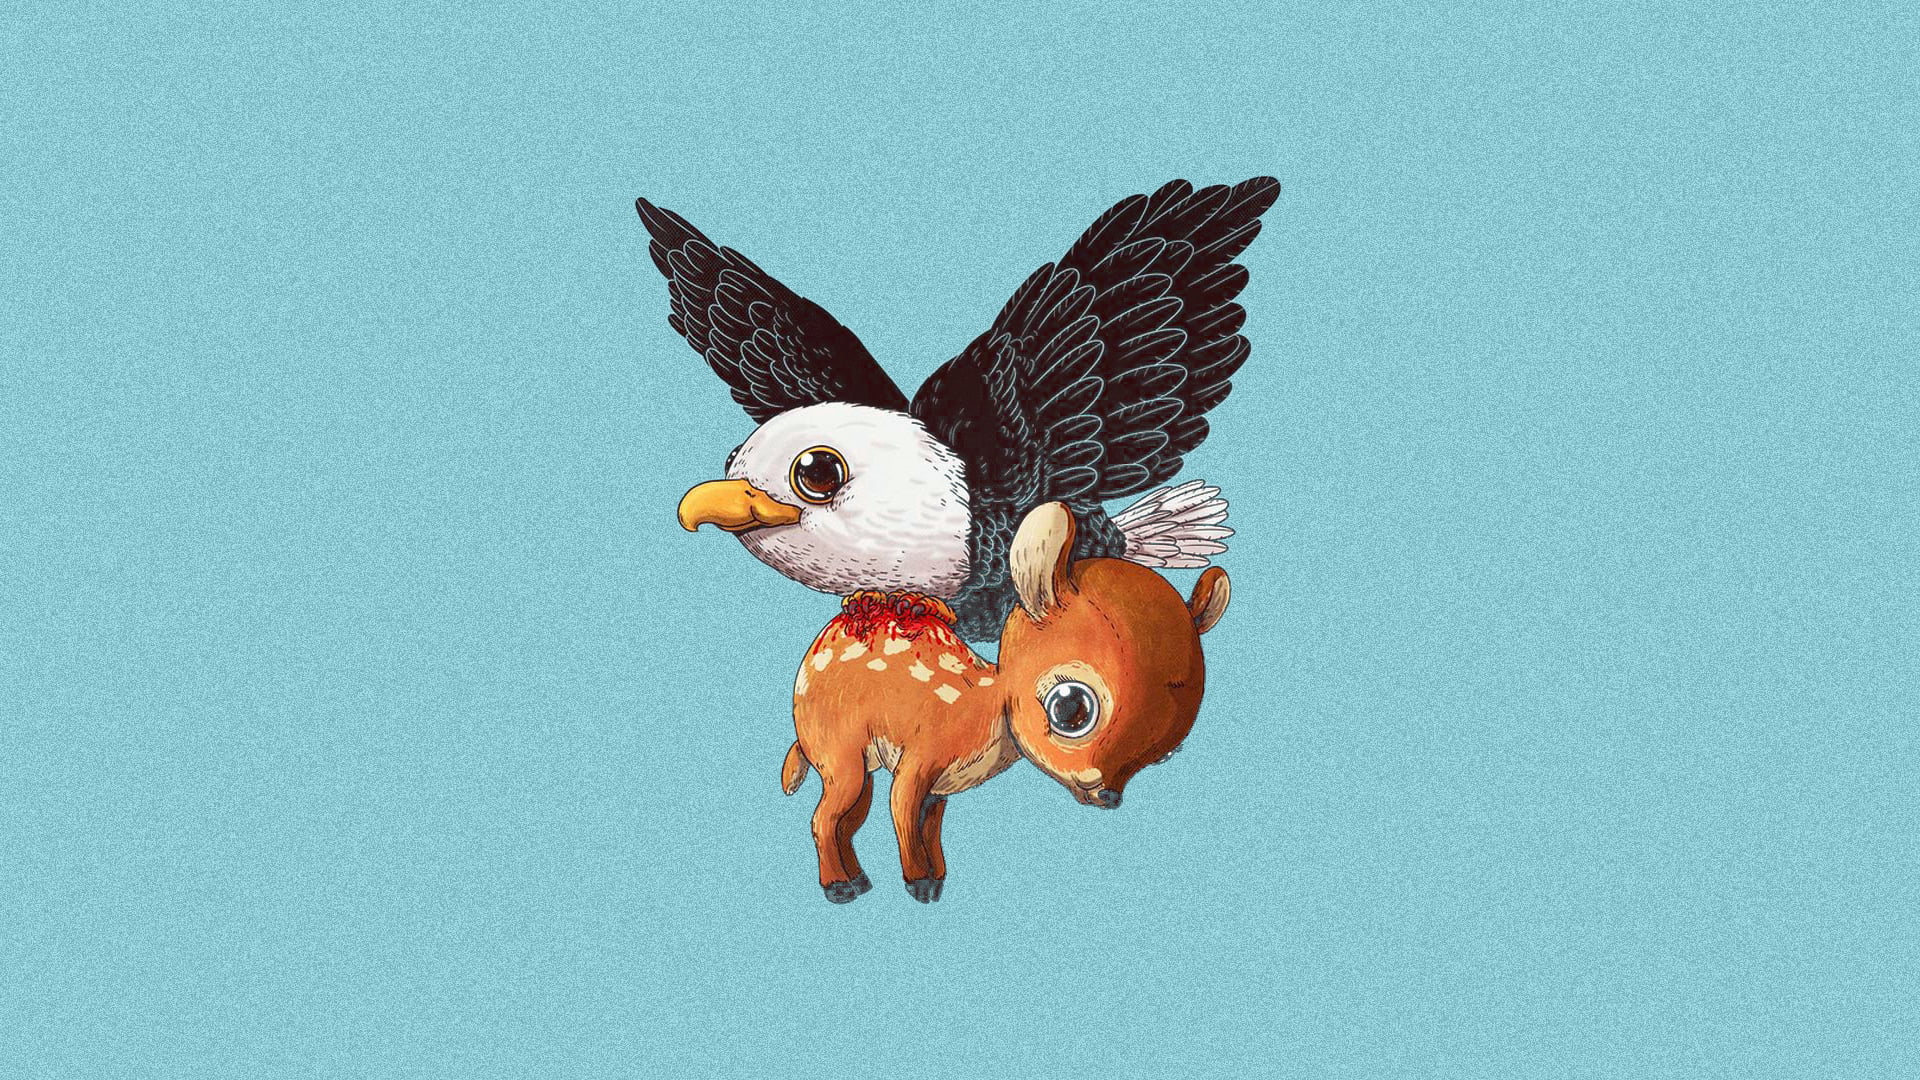 black eagle and brown deer animated illustration, animals, minimalism